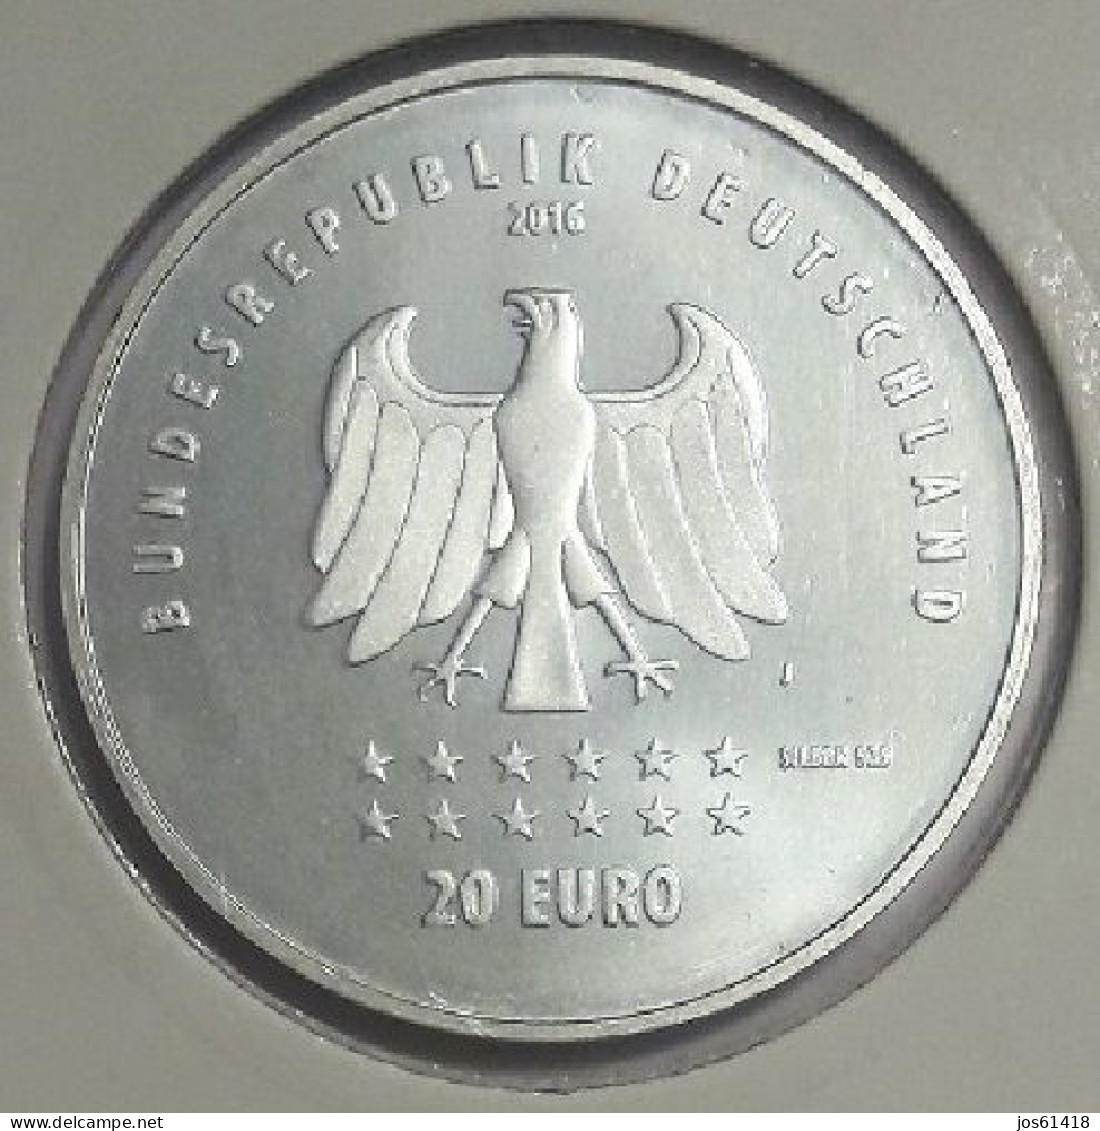 20 Euros Alemania / Germany   2016 175 Aniversario De La Canción Alemana  J Plata - Allemagne